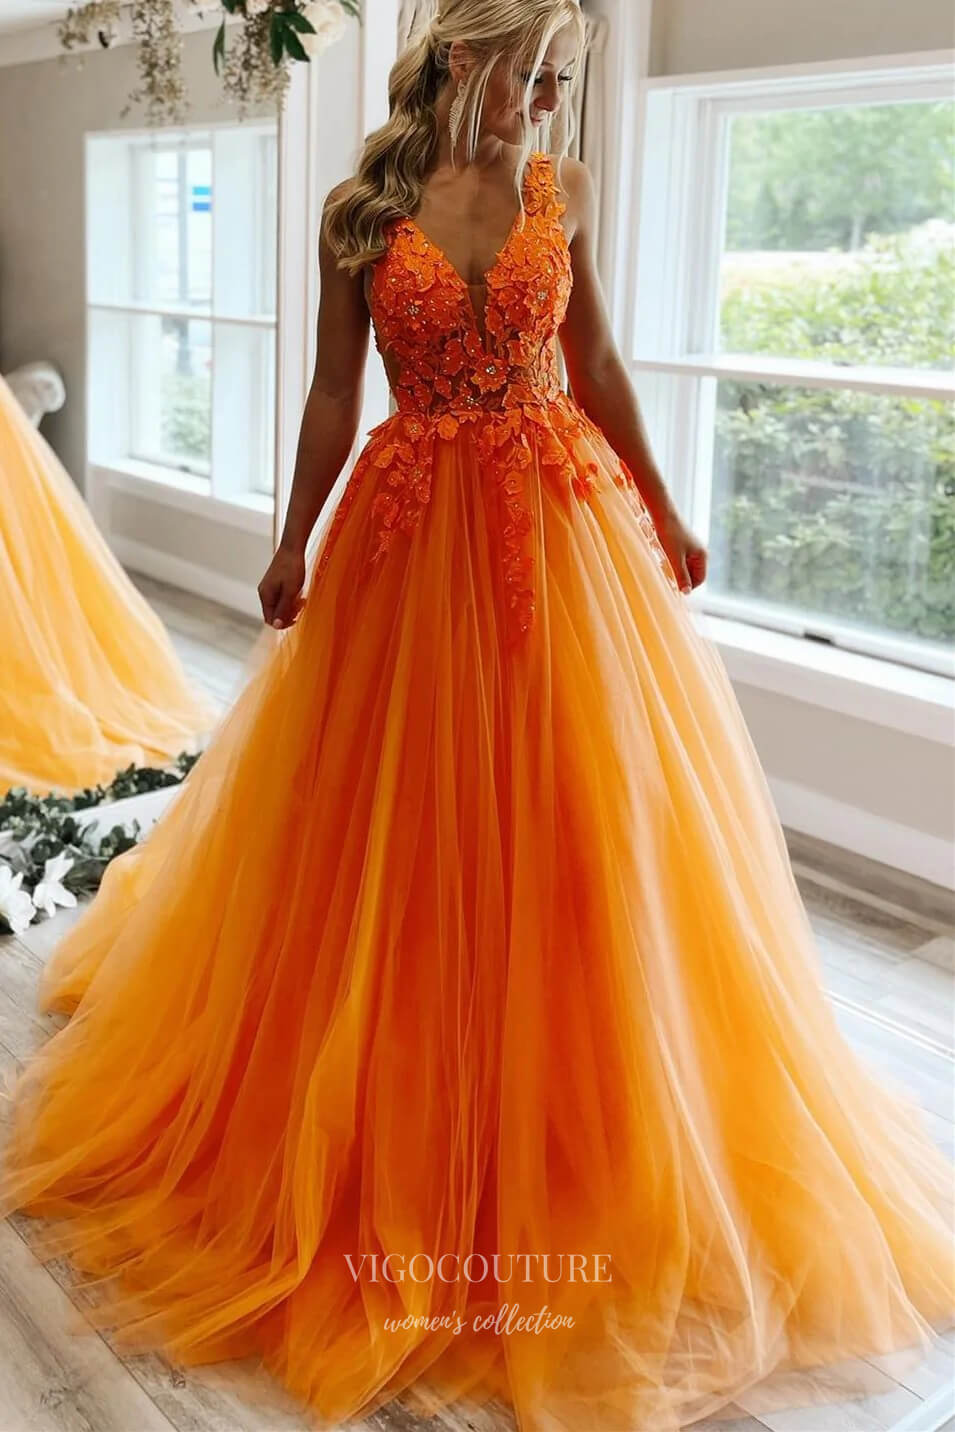 Orange Lace Applique Prom Dresses Spaghetti Strap V-Neck Evening Gown 21888-Prom Dresses-vigocouture-Orange-US2-vigocouture